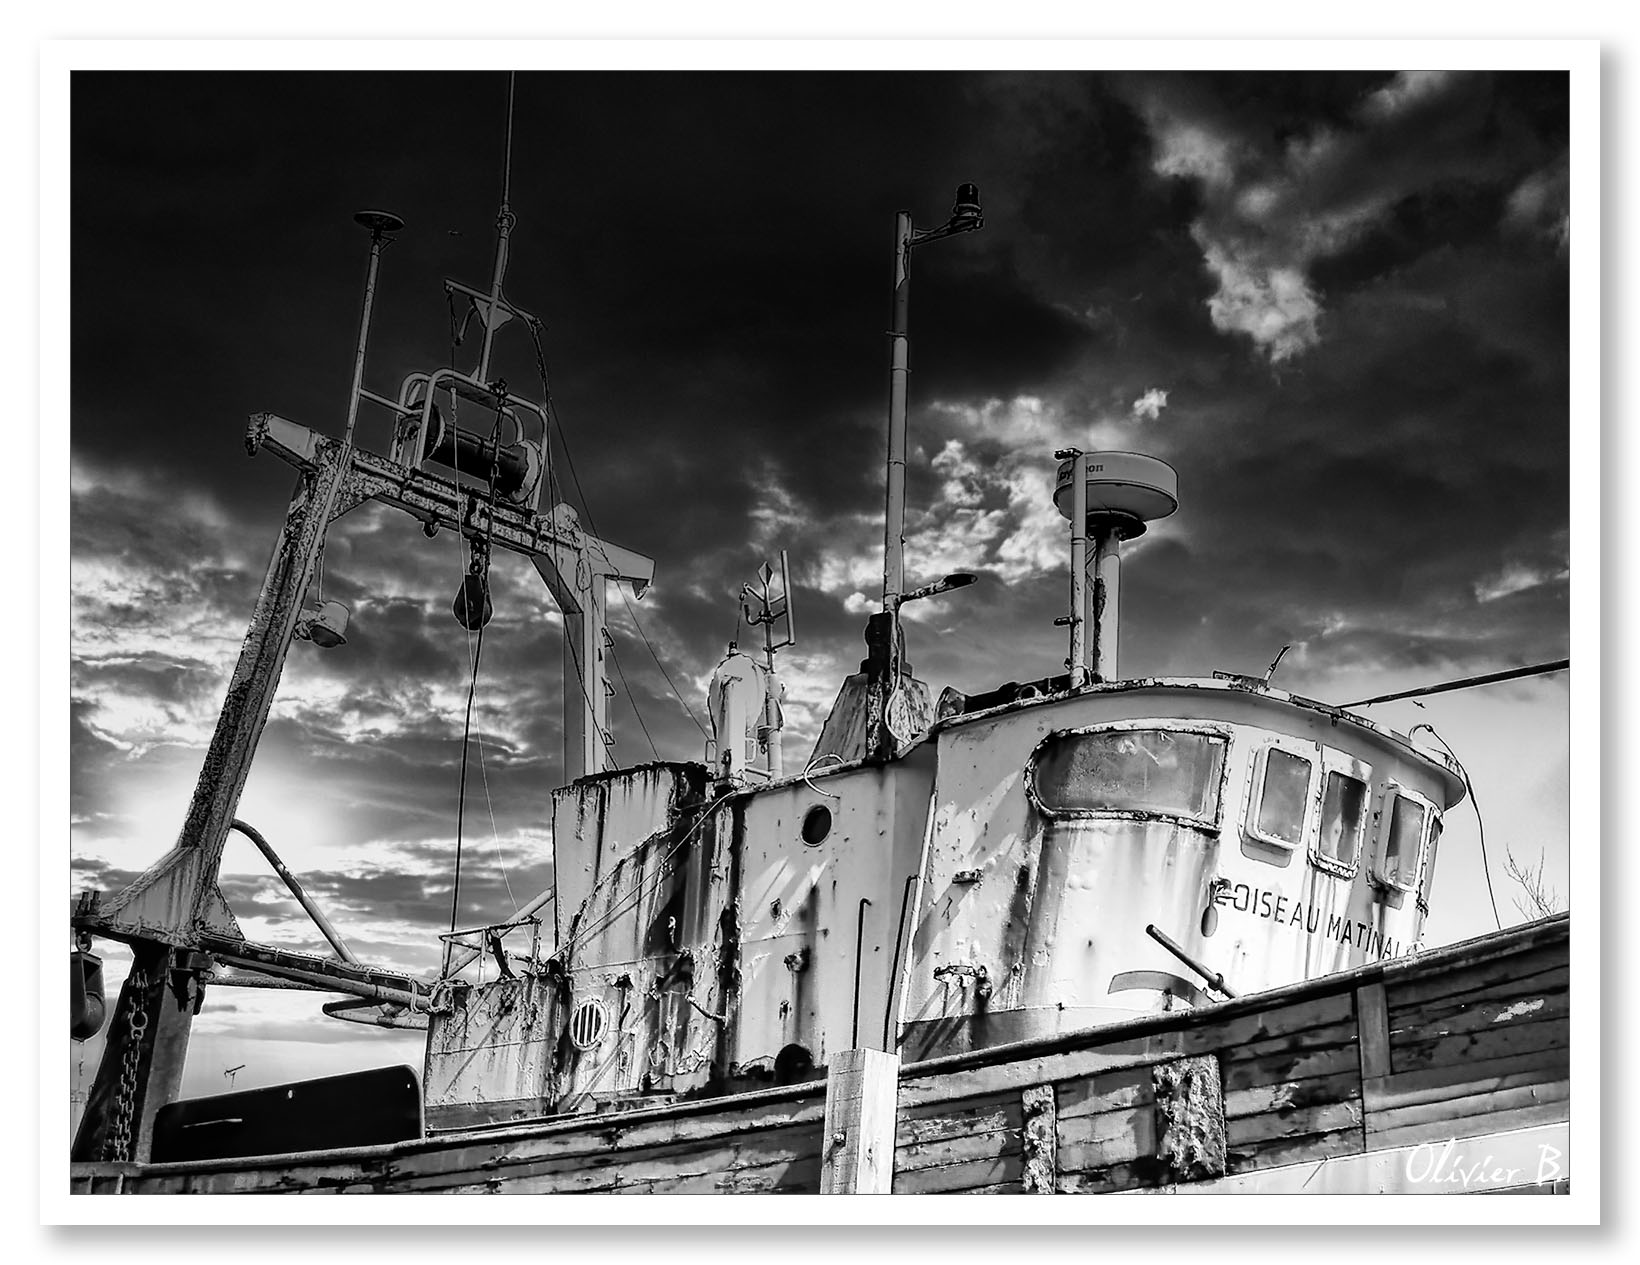 Ancien navire de pêche en bois à la retraite, exposé aux éléments sous un ciel menaçant